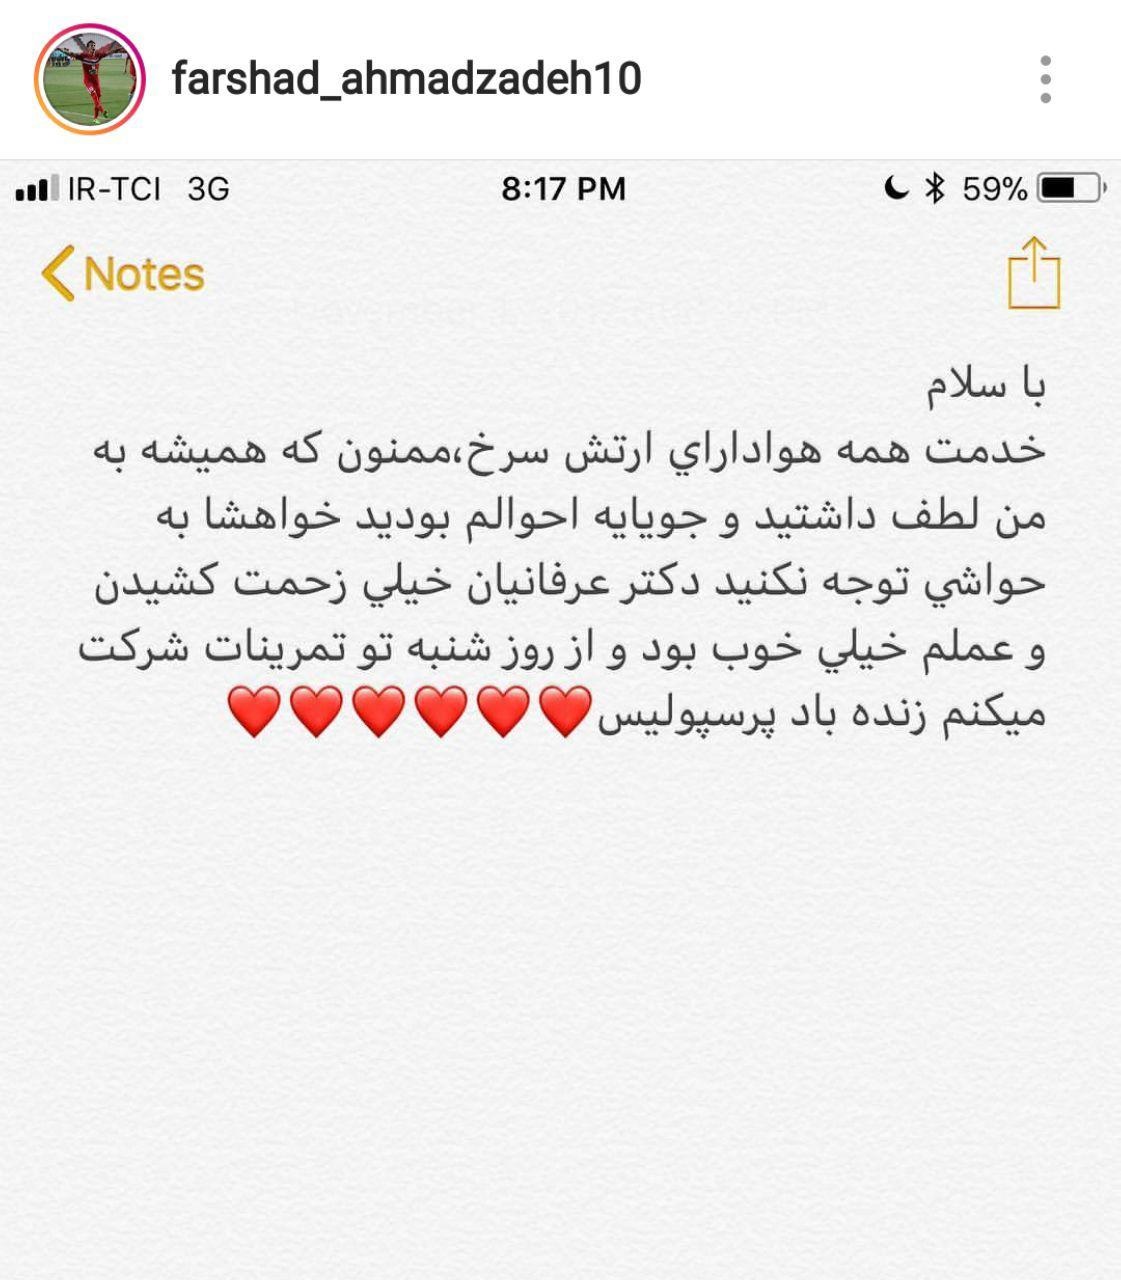 واکنش احمدزاده به شایعات درباره مصدومیتش